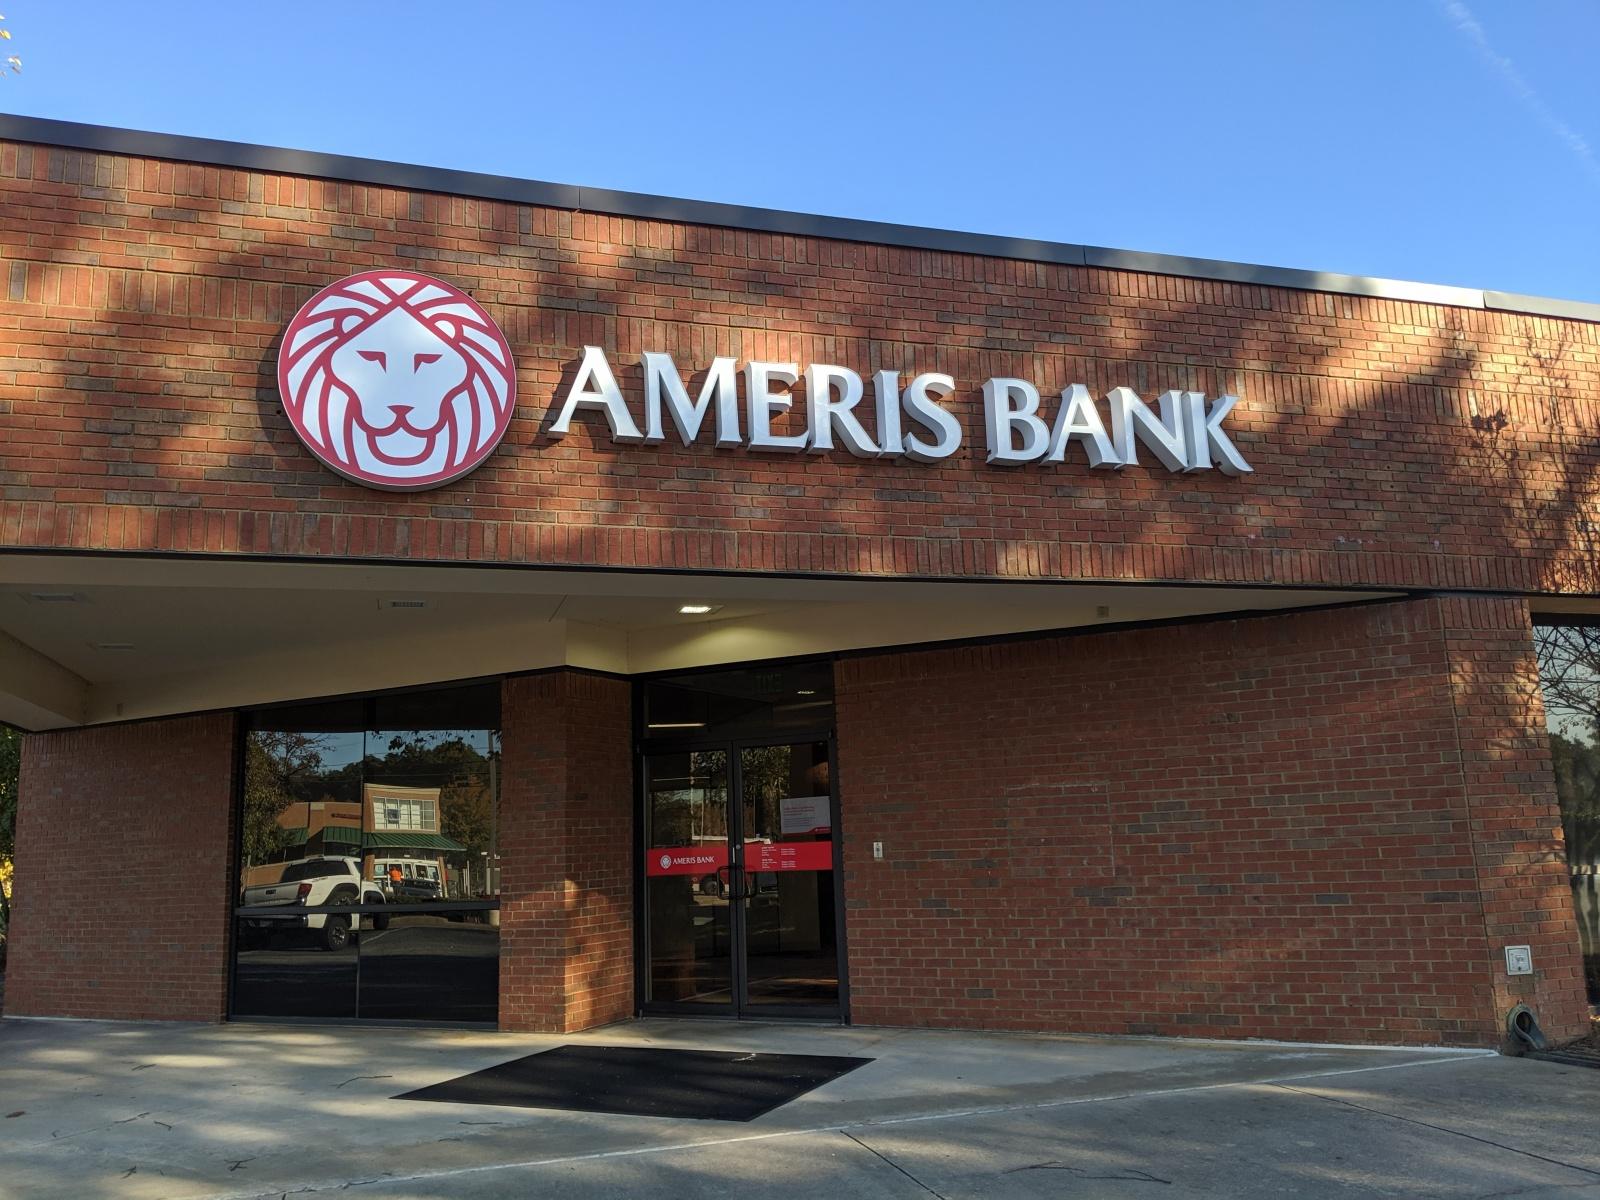 Ameris Bank Signage